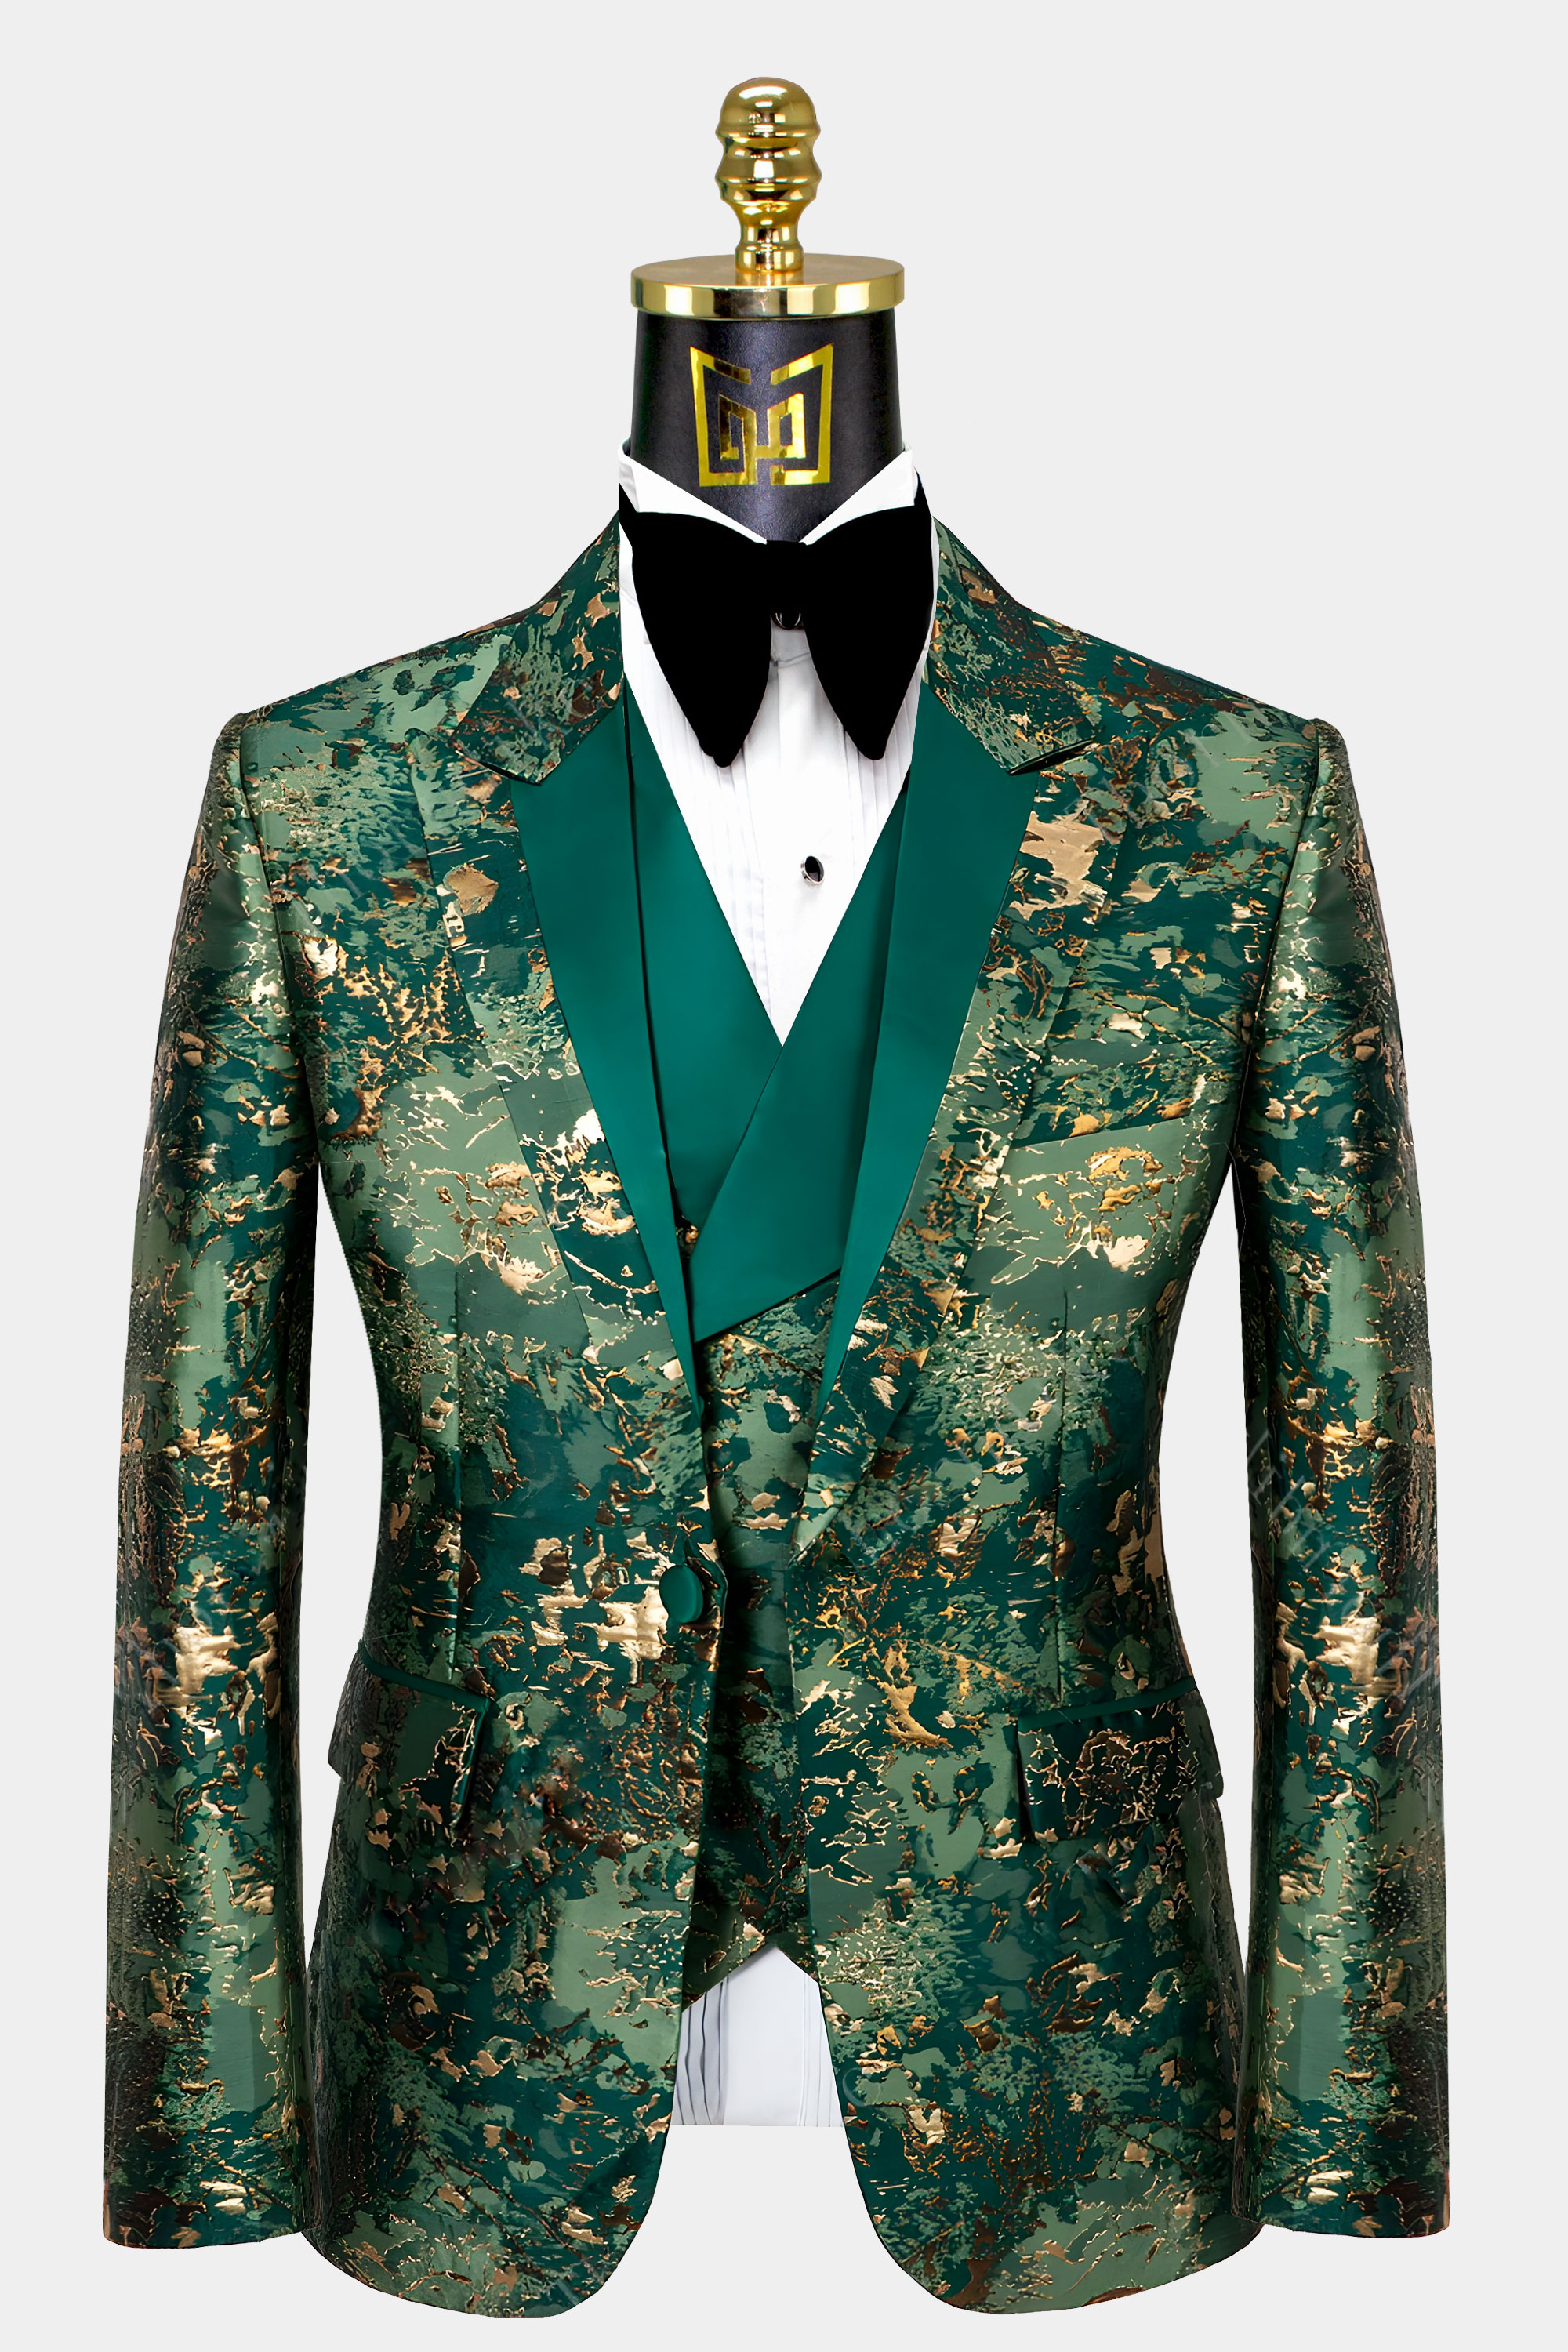 Camo-Tuxedo-Jacket-Green-and-Gold-from-Gentlemansguru.com